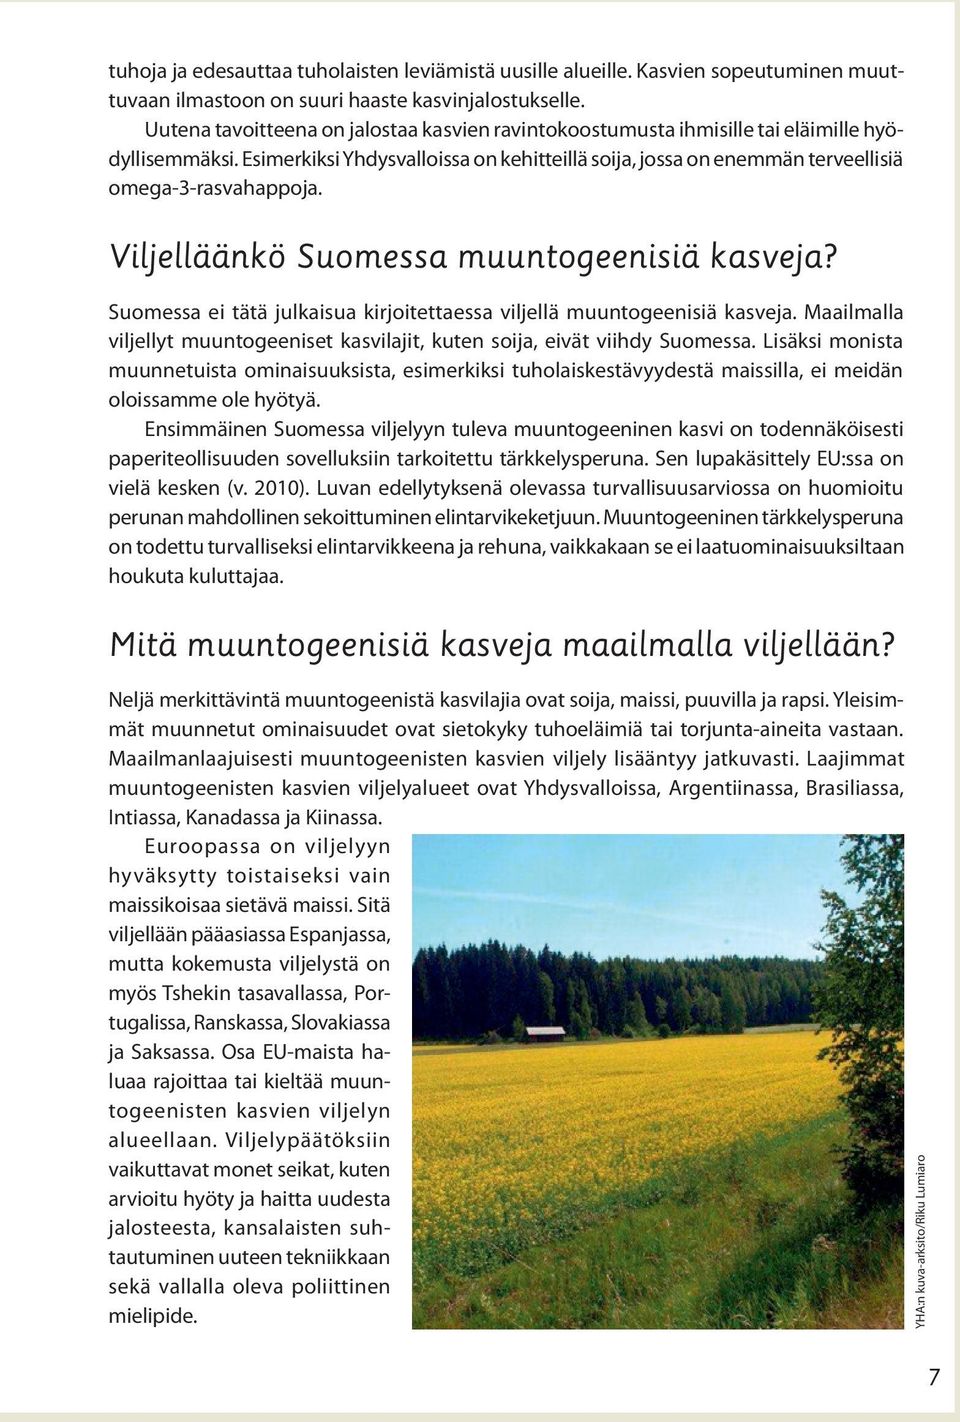 Viljelläänkö Suomessa muuntogeenisiä kasveja? Suomessa ei tätä julkaisua kirjoitettaessa viljellä muuntogeenisiä kasveja.